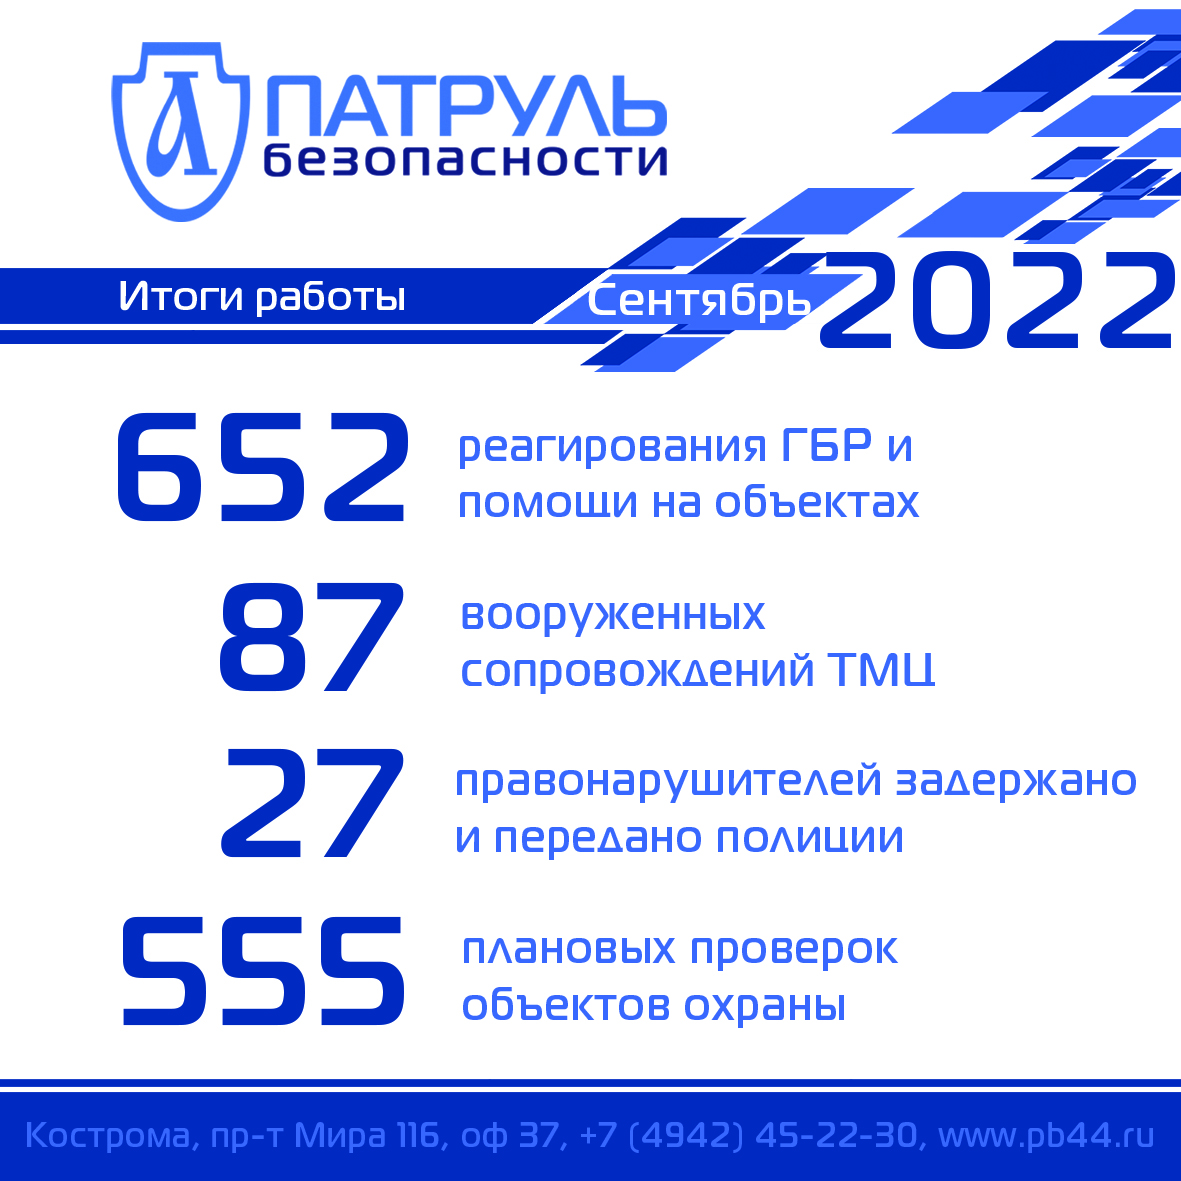 Итоги работы компании "Патруль Безопасности" за сентябрь 2022 года